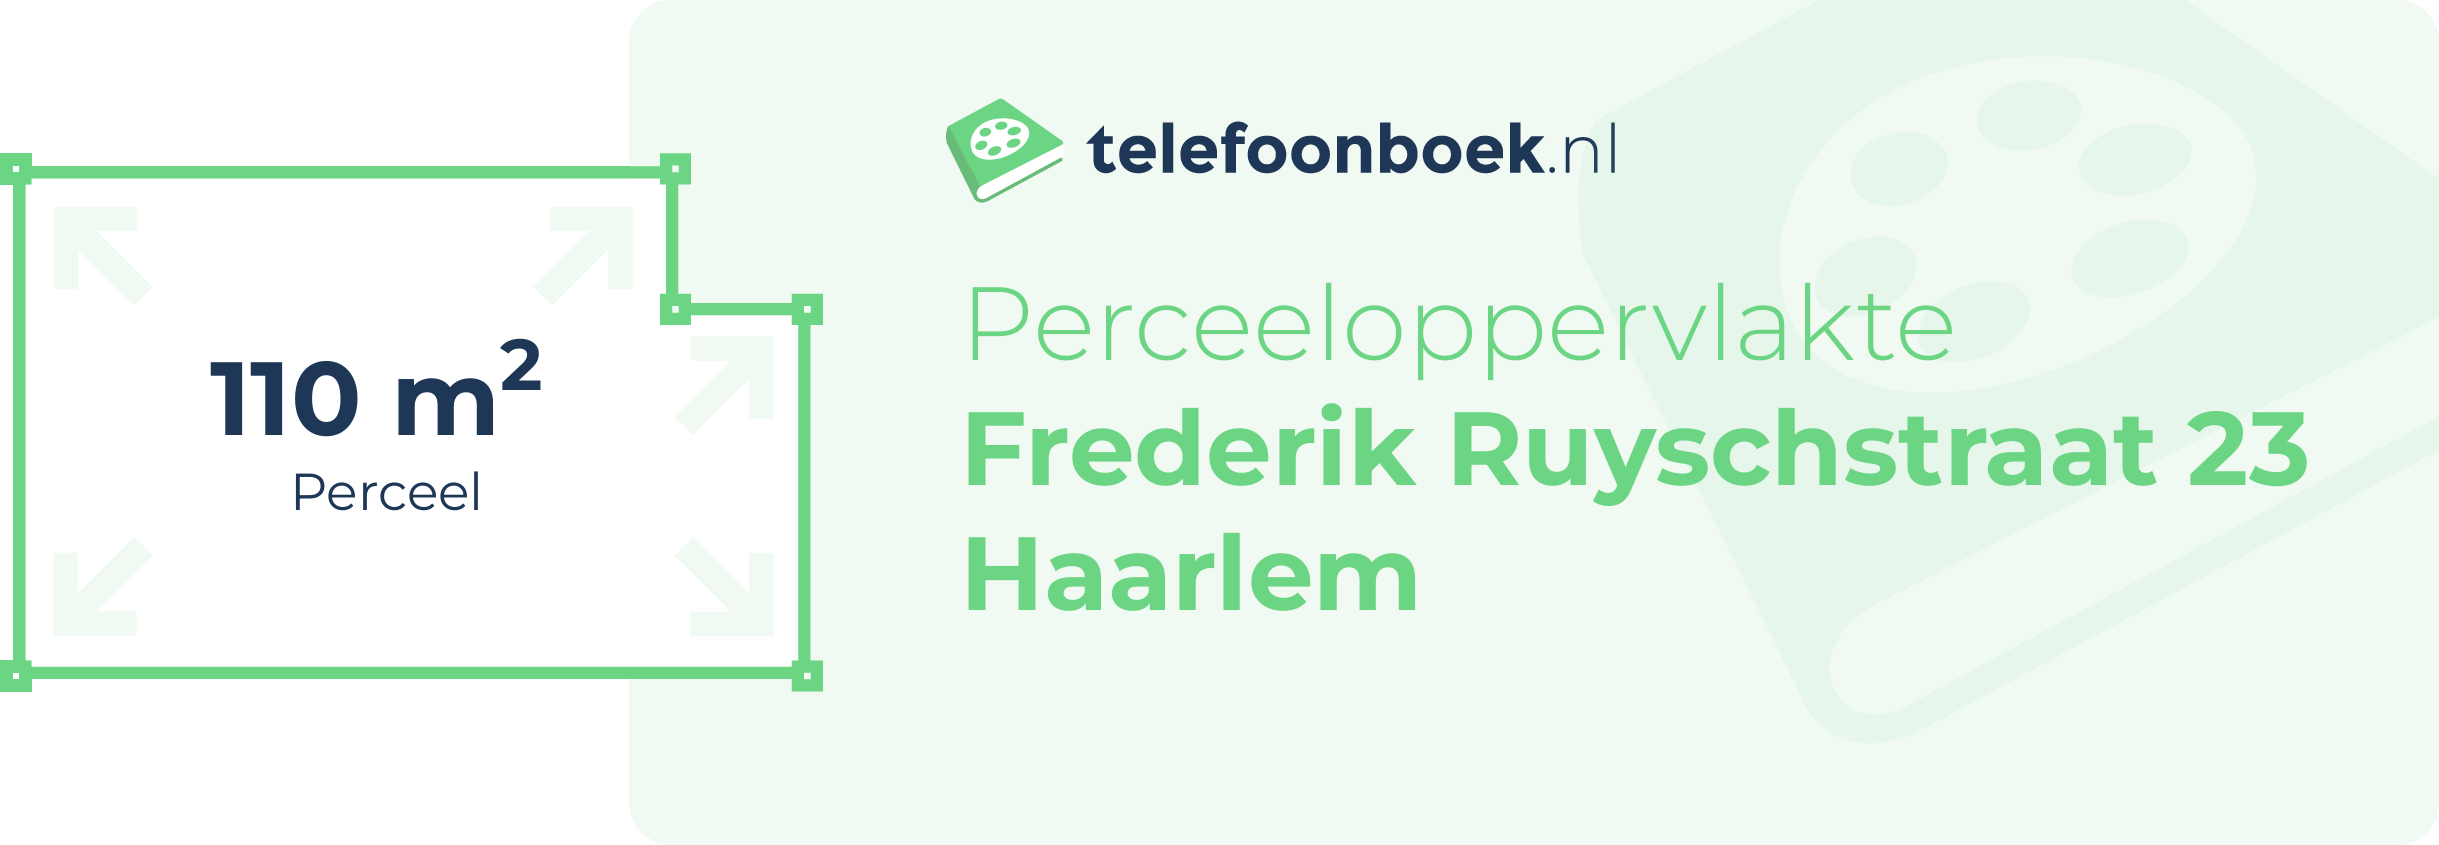 Perceeloppervlakte Frederik Ruyschstraat 23 Haarlem